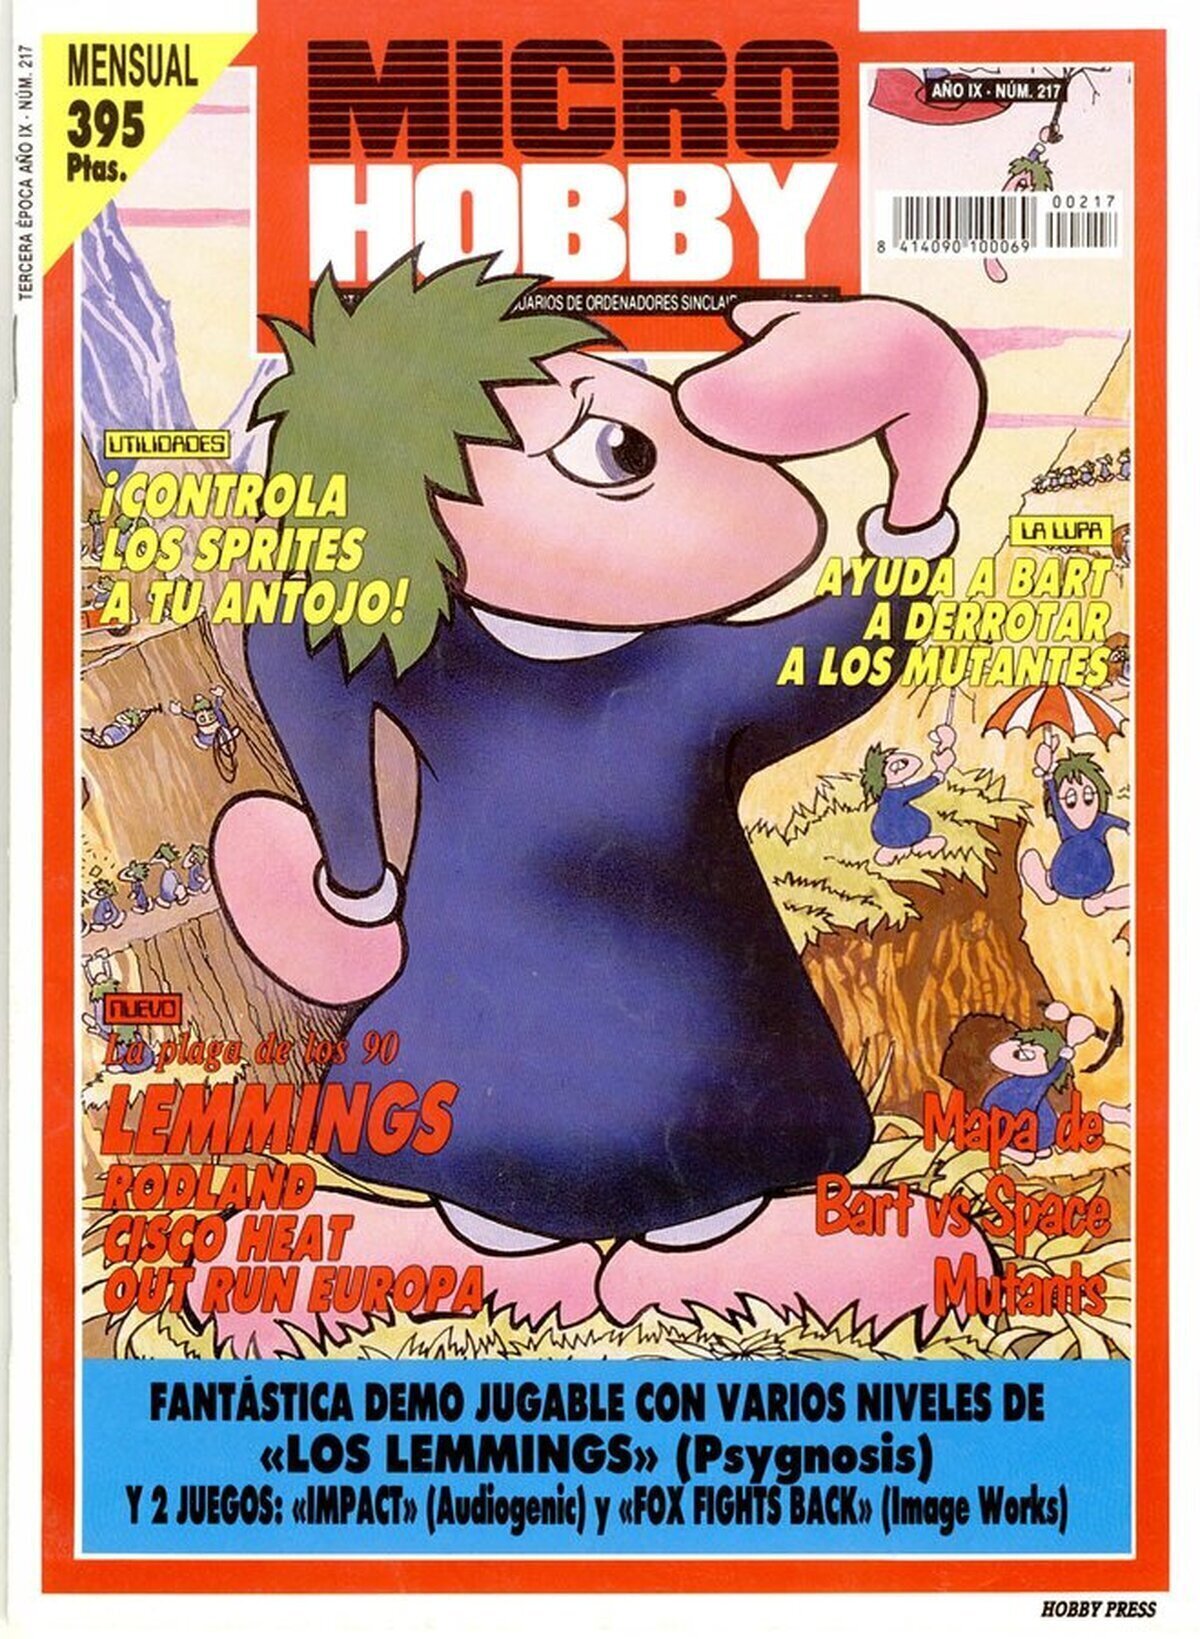 Hace 32 años de la publicación del último número de Microhobby, por IpgNeilPar